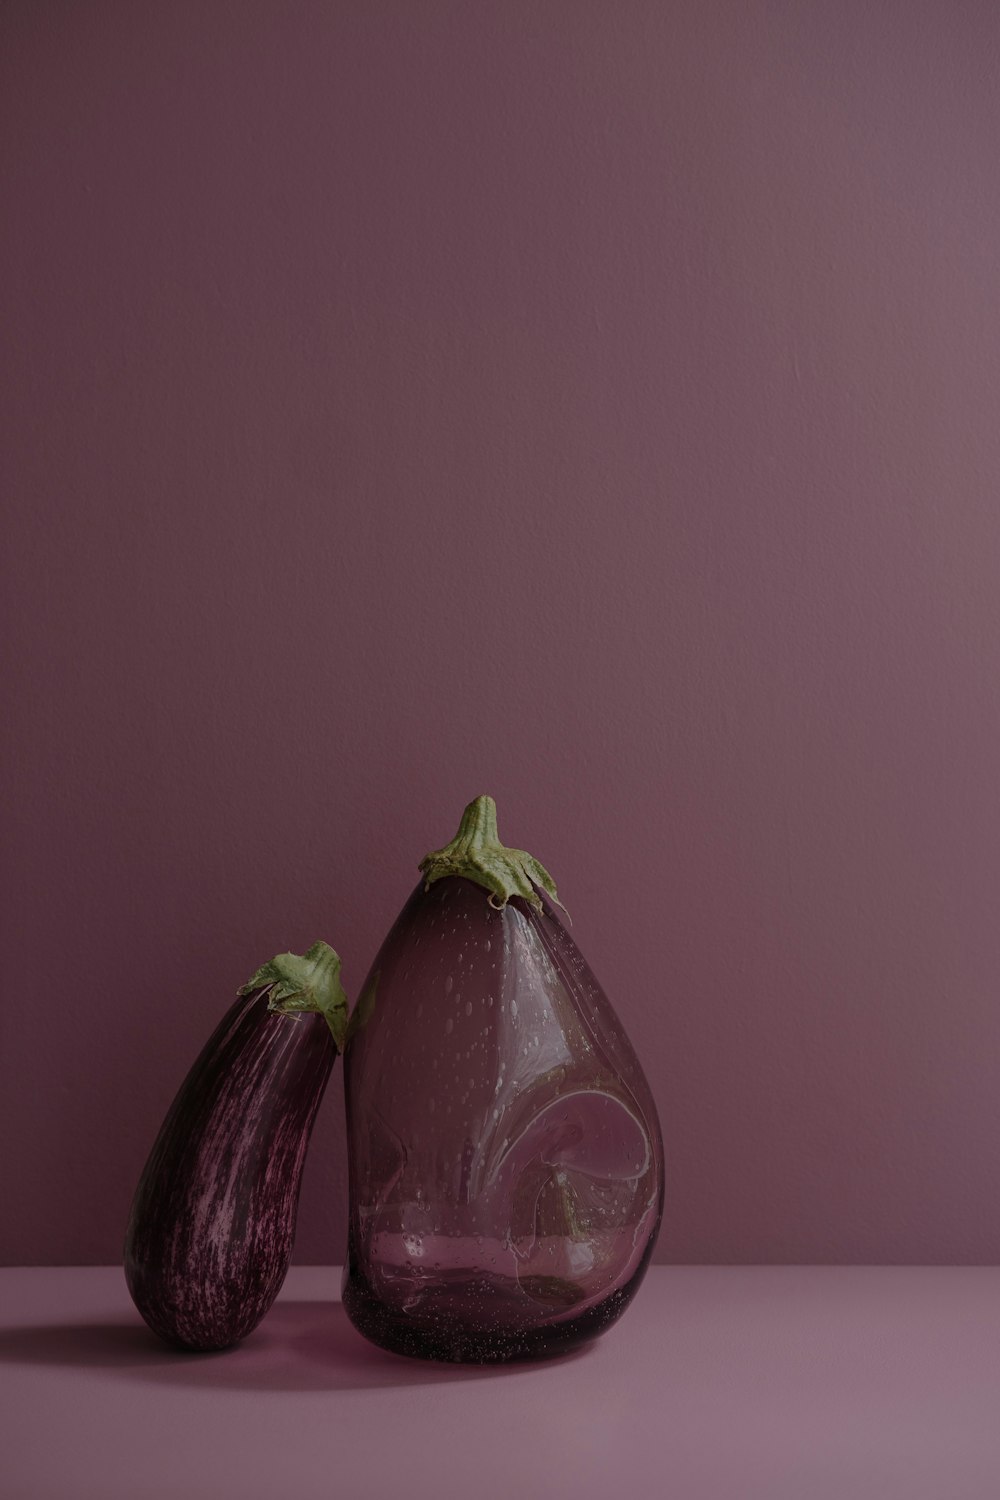 ナスの半分が2つ入った紫色の花瓶